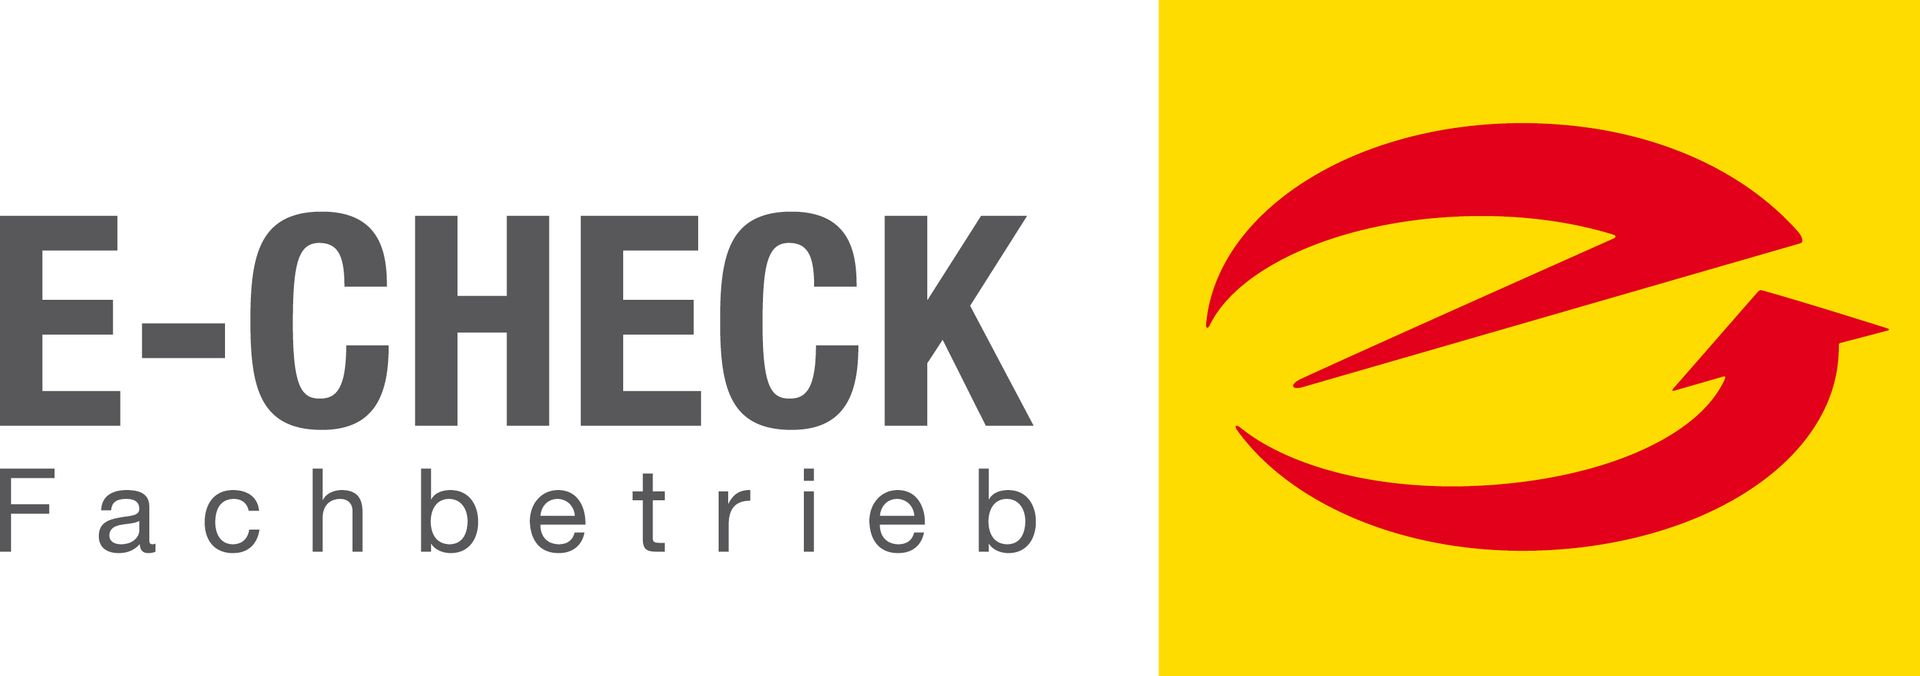 Logo E-Check Fachbetrieb